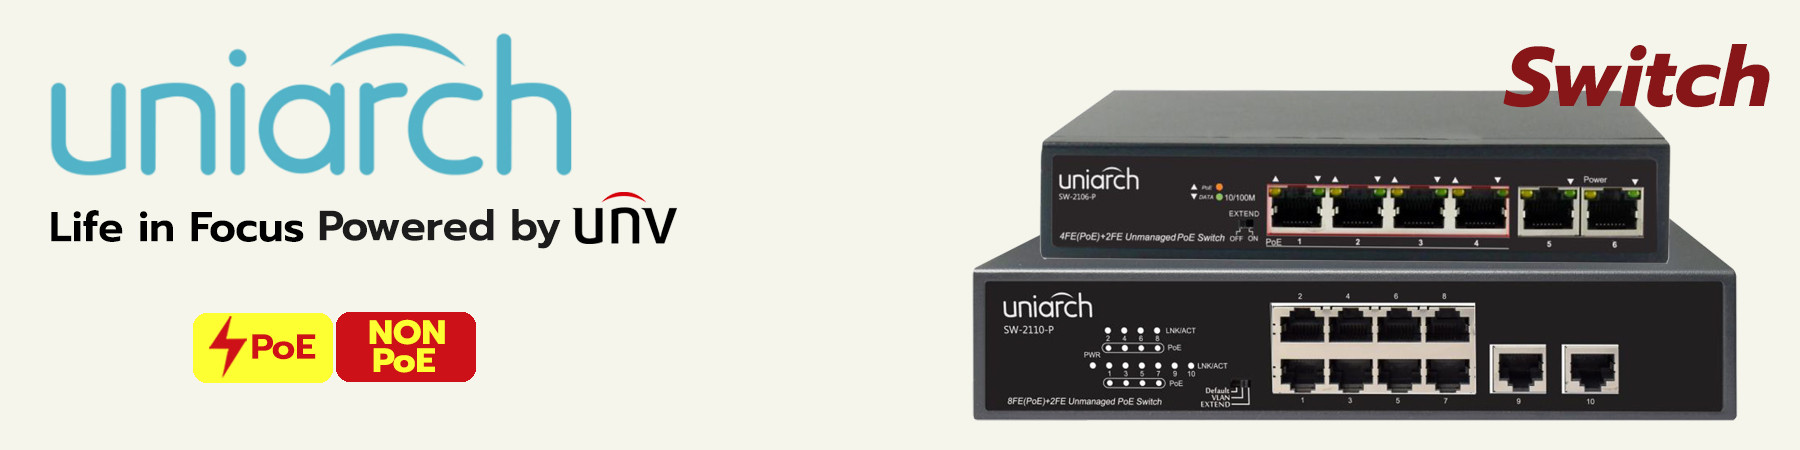 Uniarch Switch PoE, Uniarch Switch Non PoE, SW-2106-P, SW-2110-P